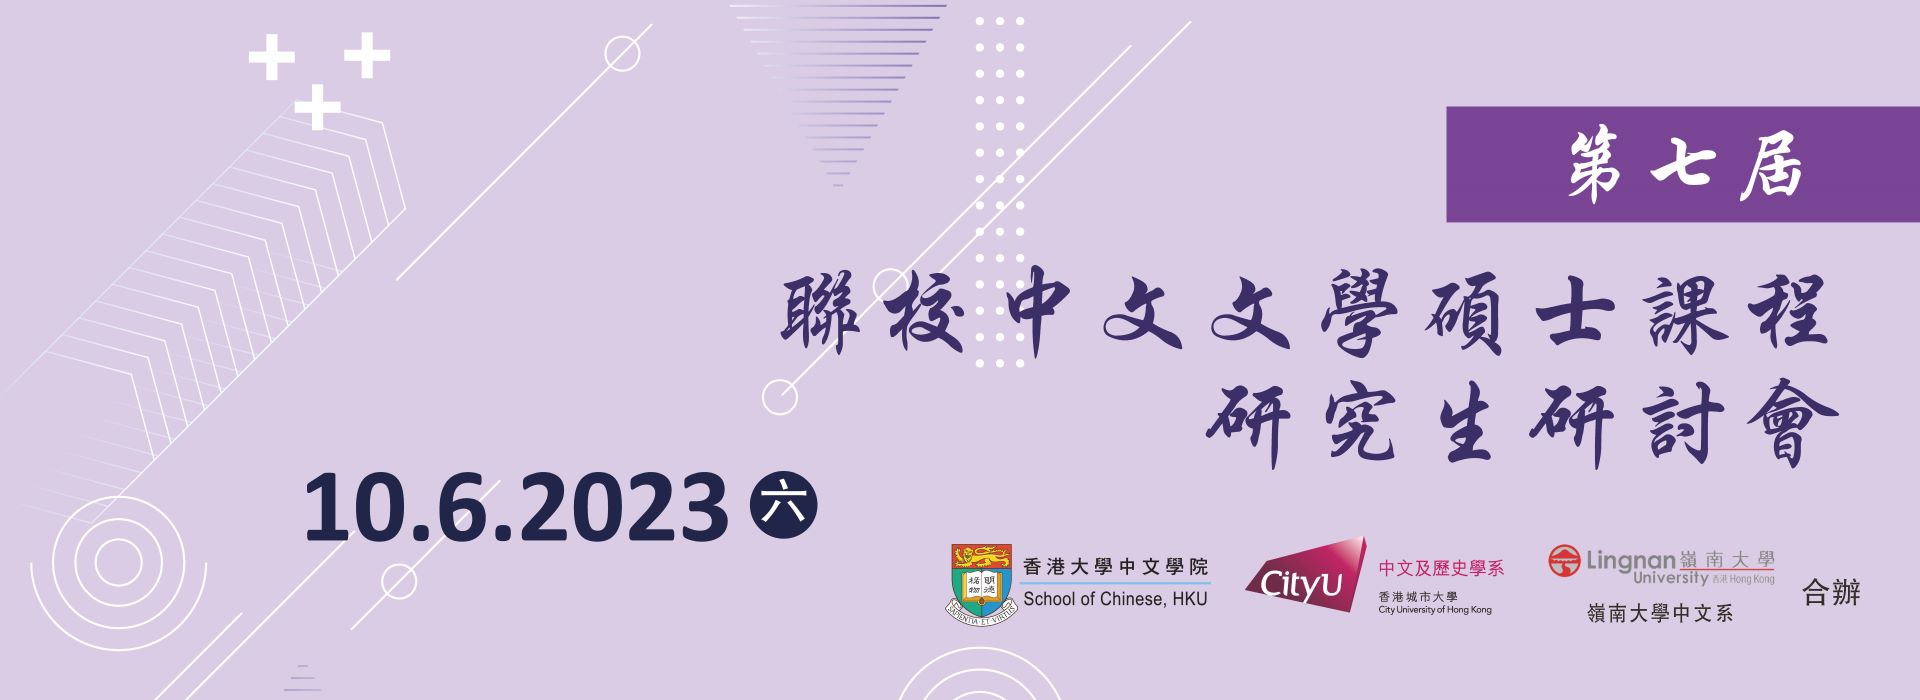 第七屆聯校中文文學碩士課程研究生研討會